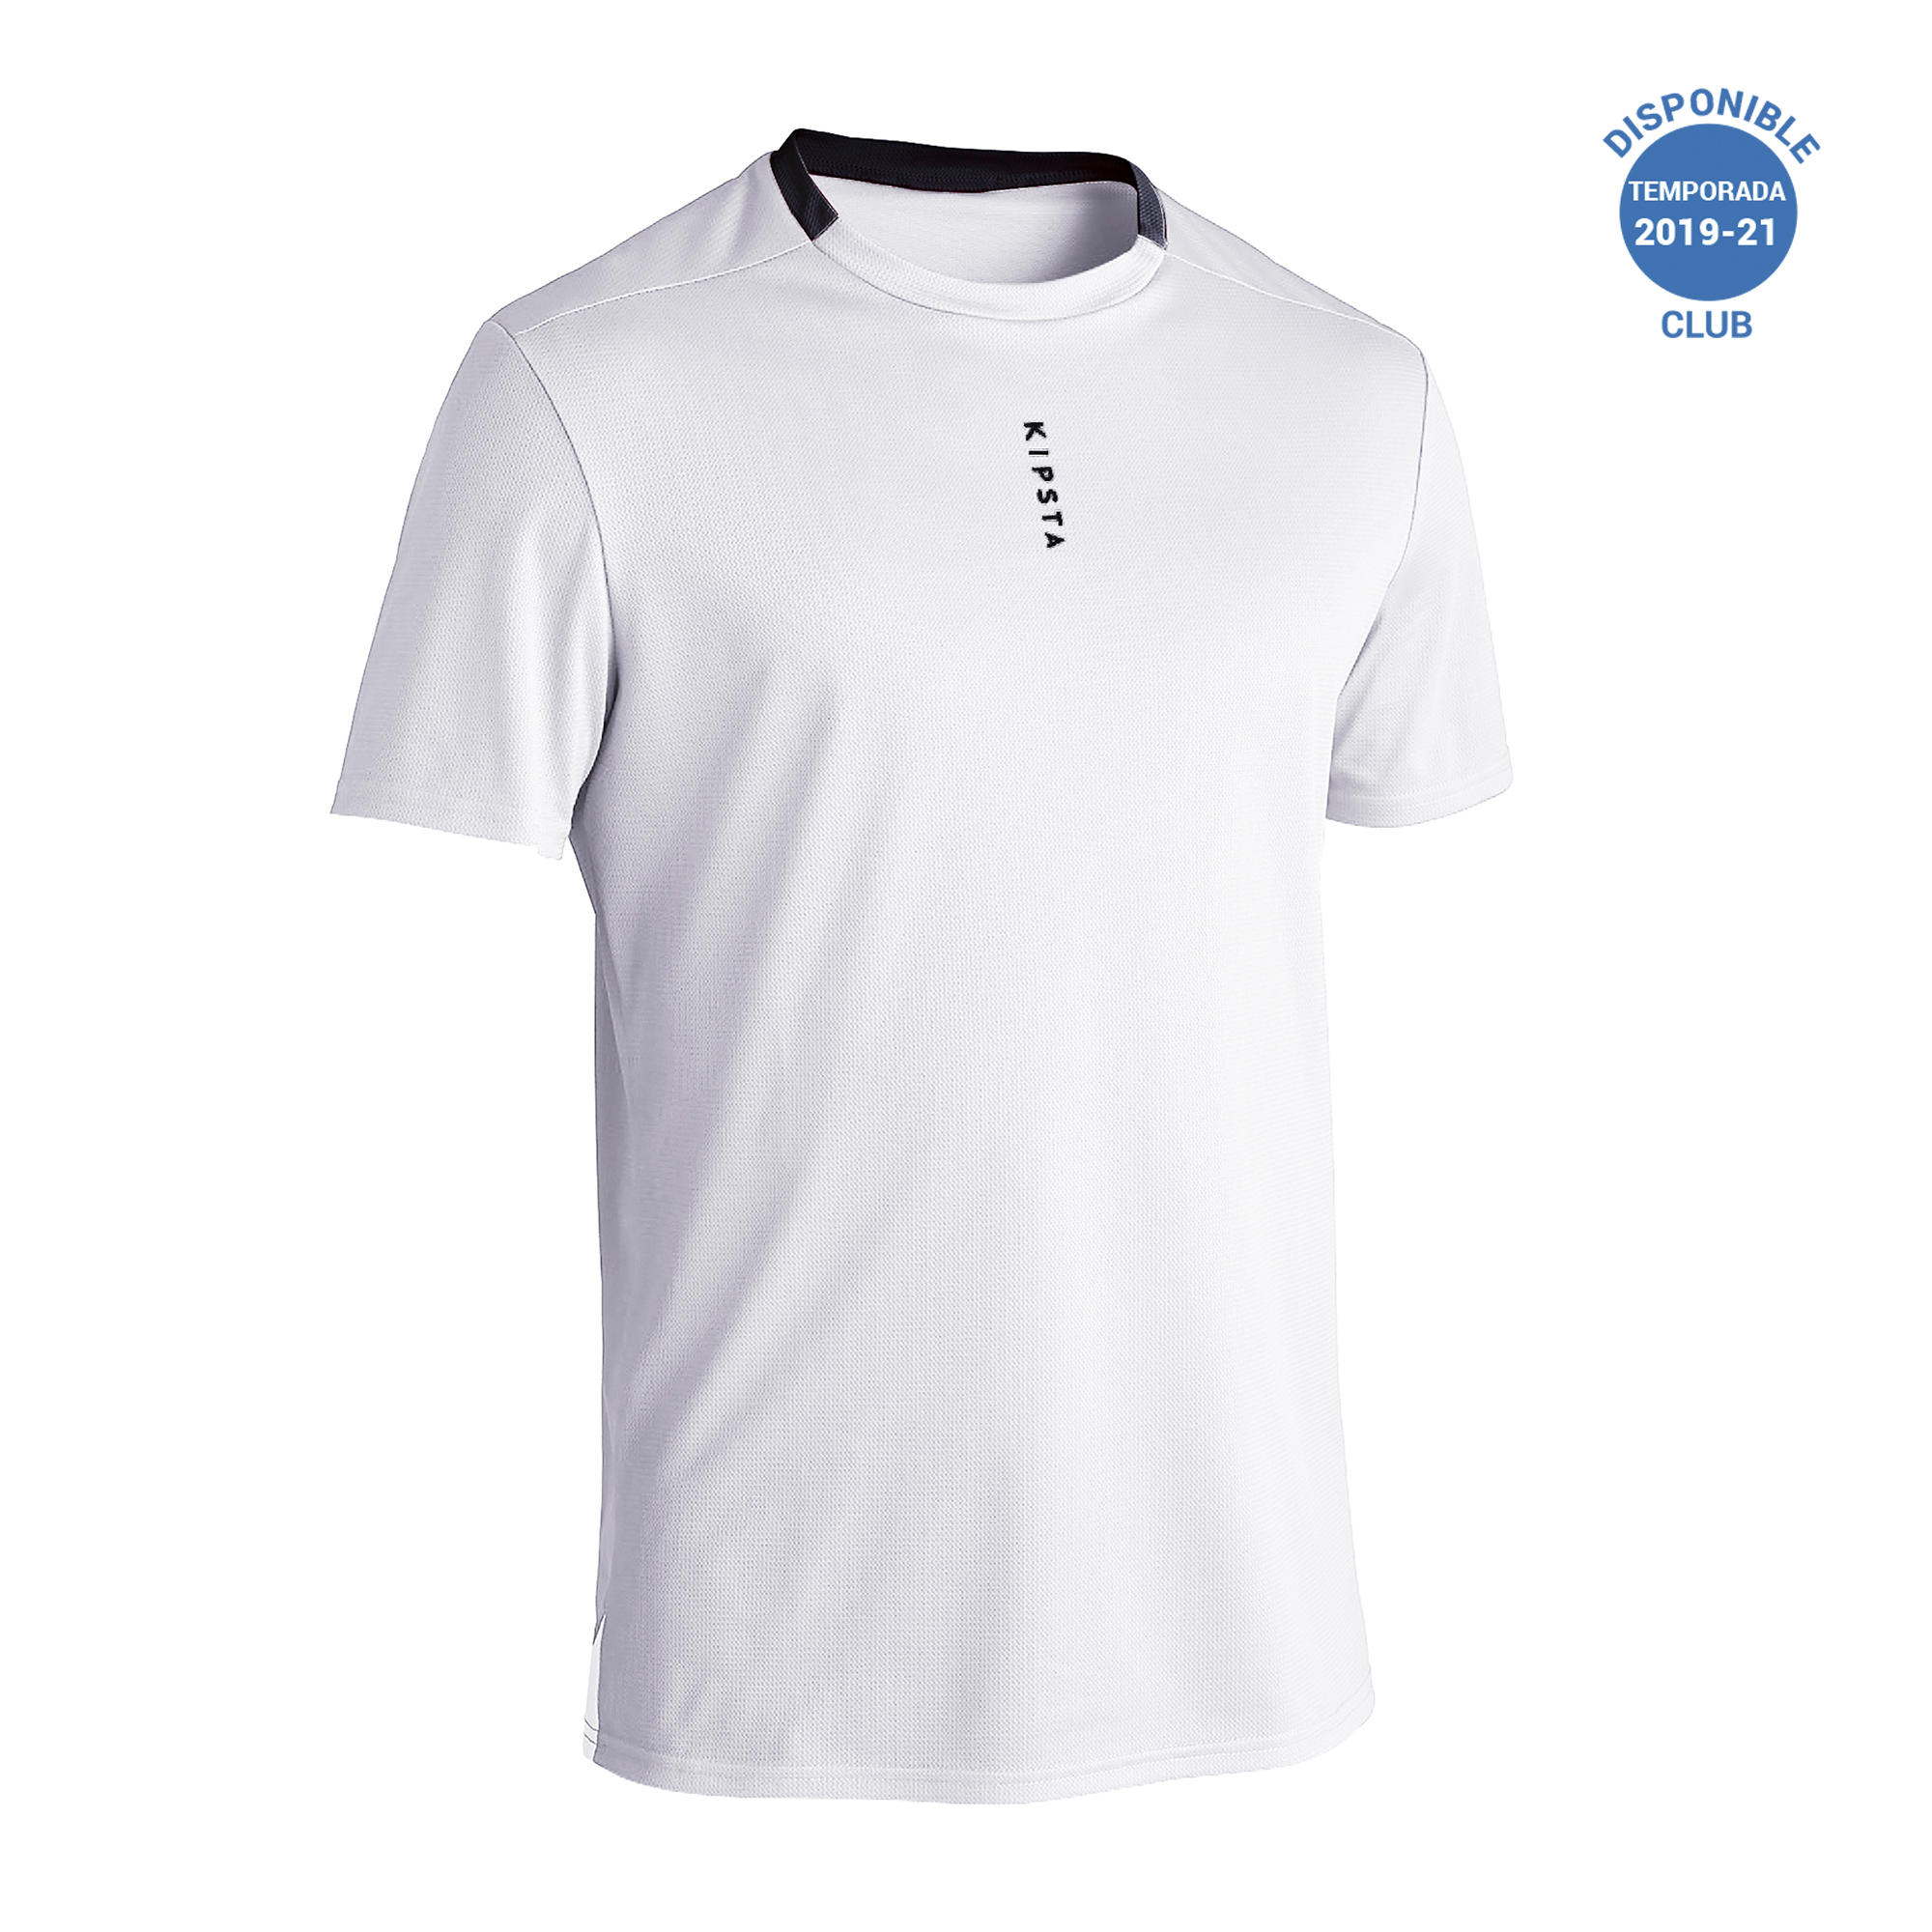 Adult Football Shirt Essential Club - White 11/29